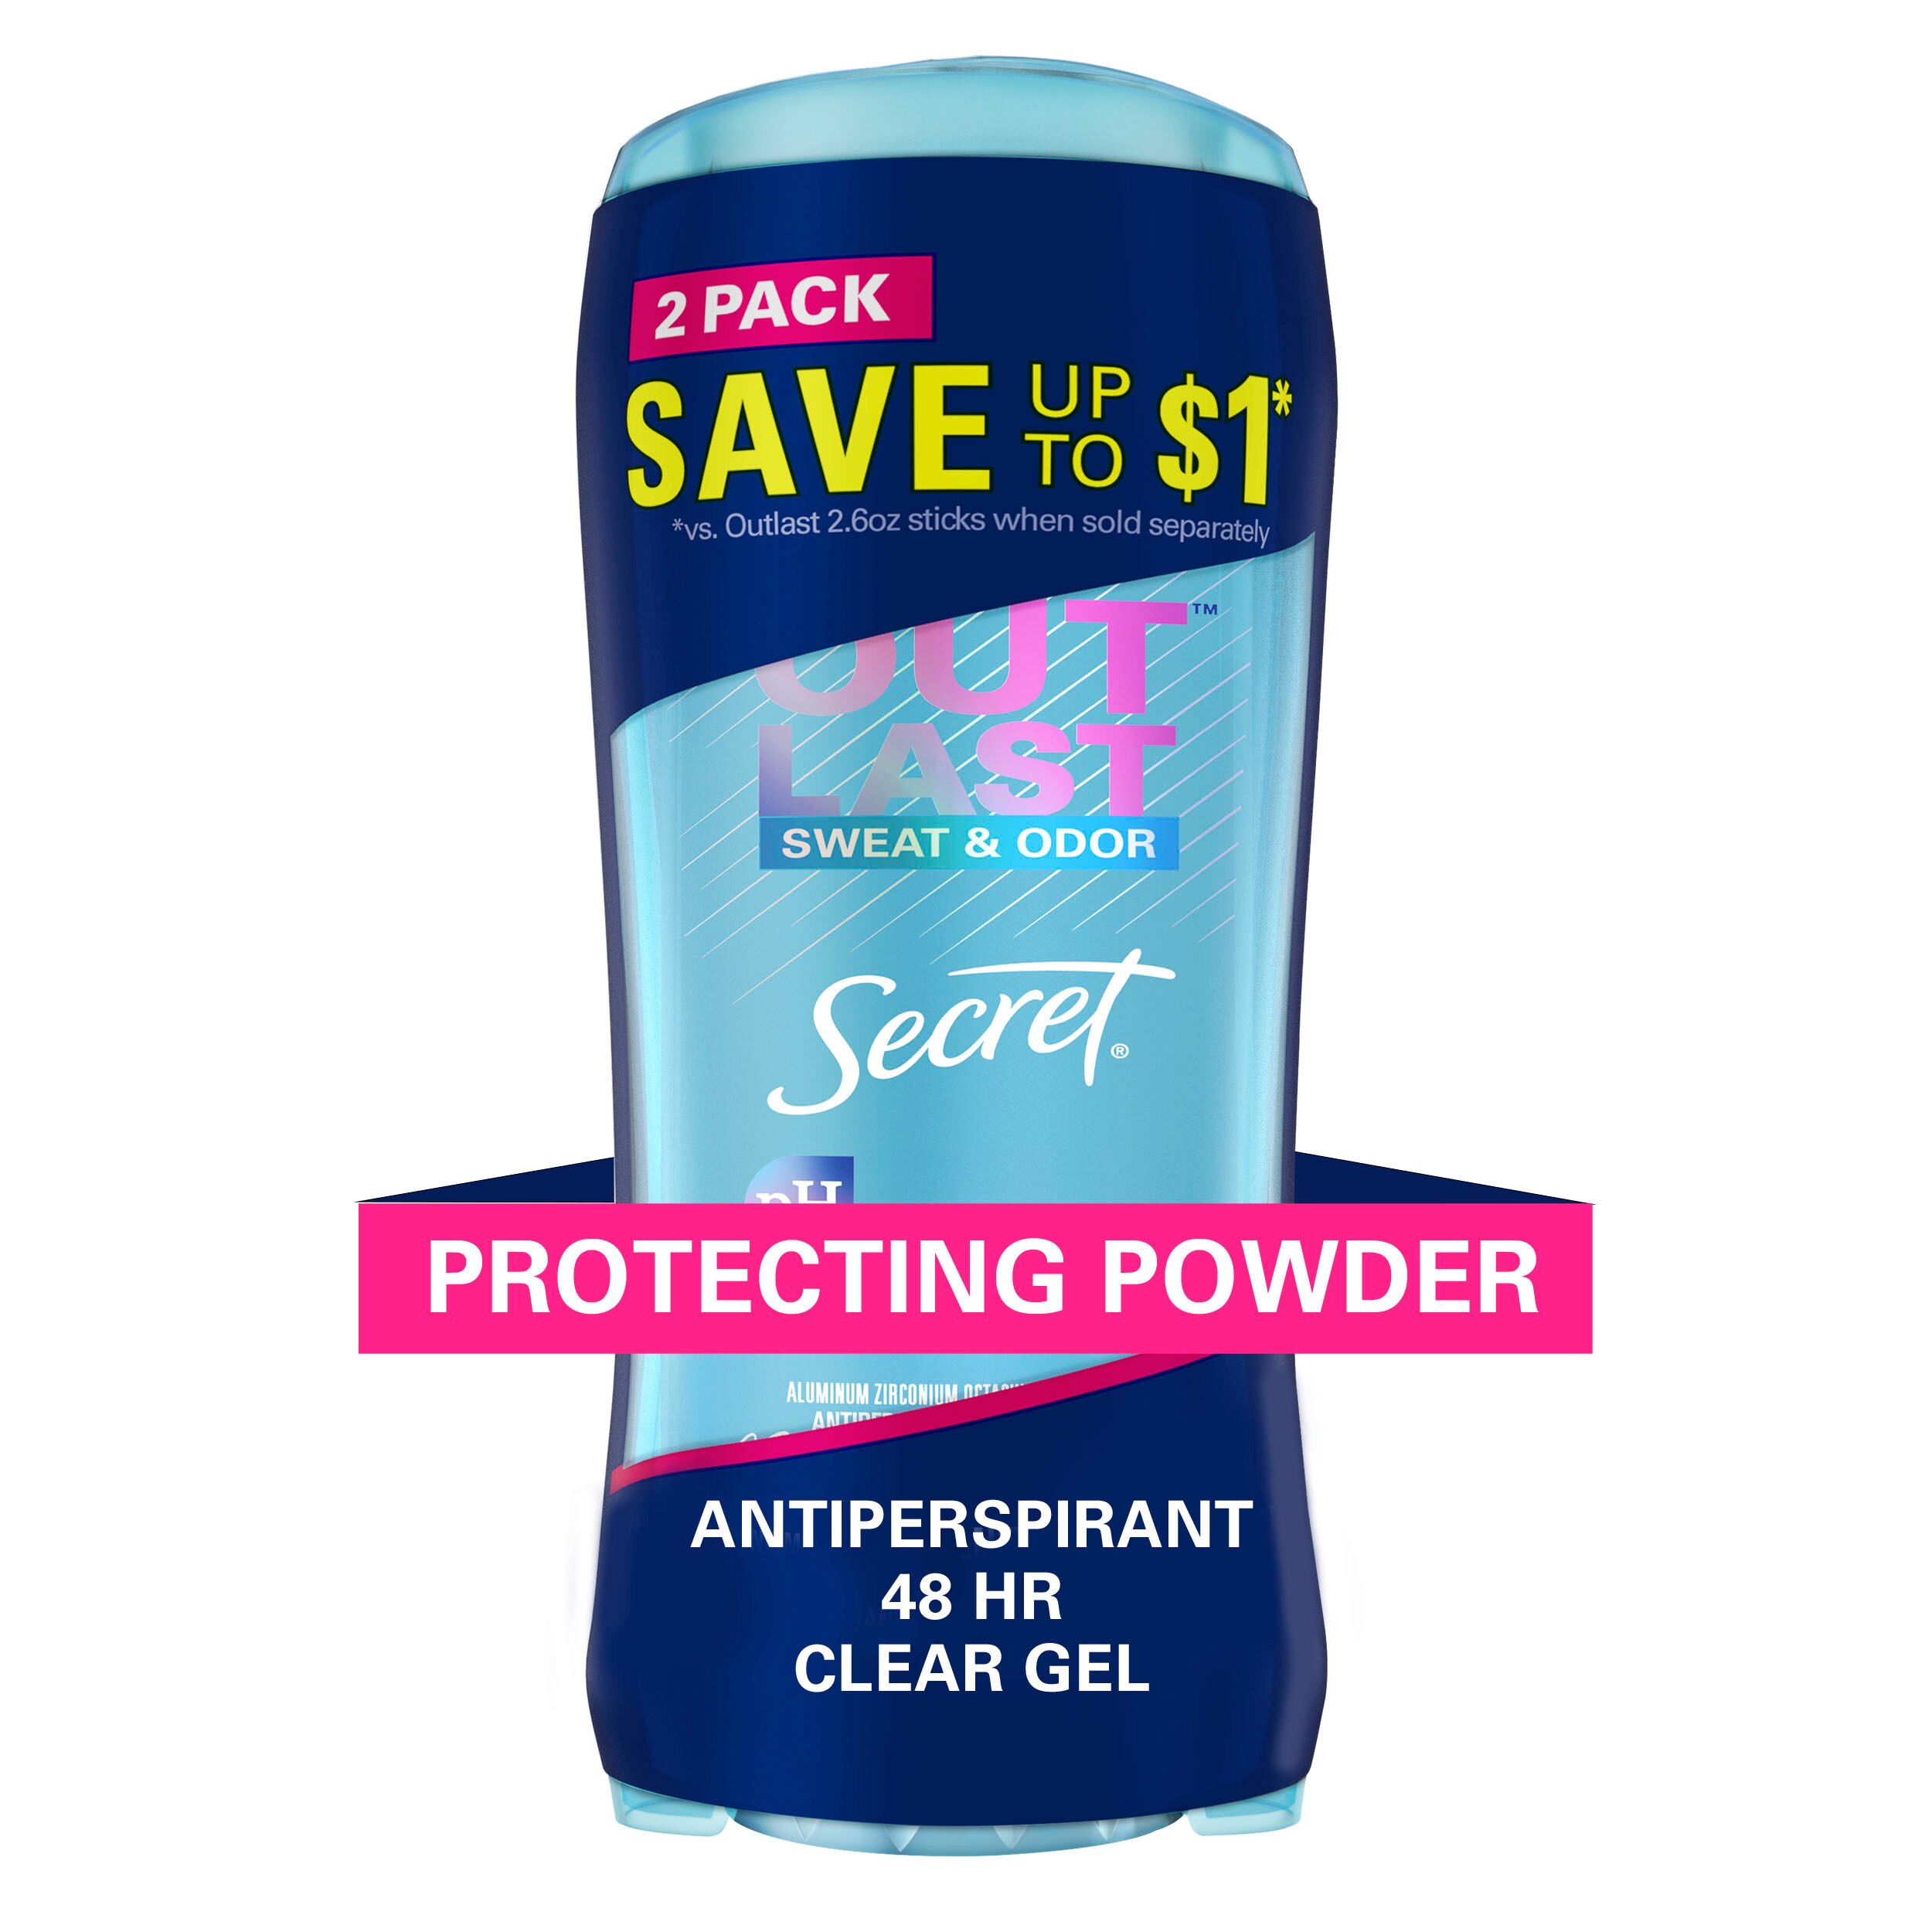 Secret Outlast 48-Hour Clear Gel Antiperspirant Stick, Protecting Powder, 2.6 OZ, 2 Pack , CVS